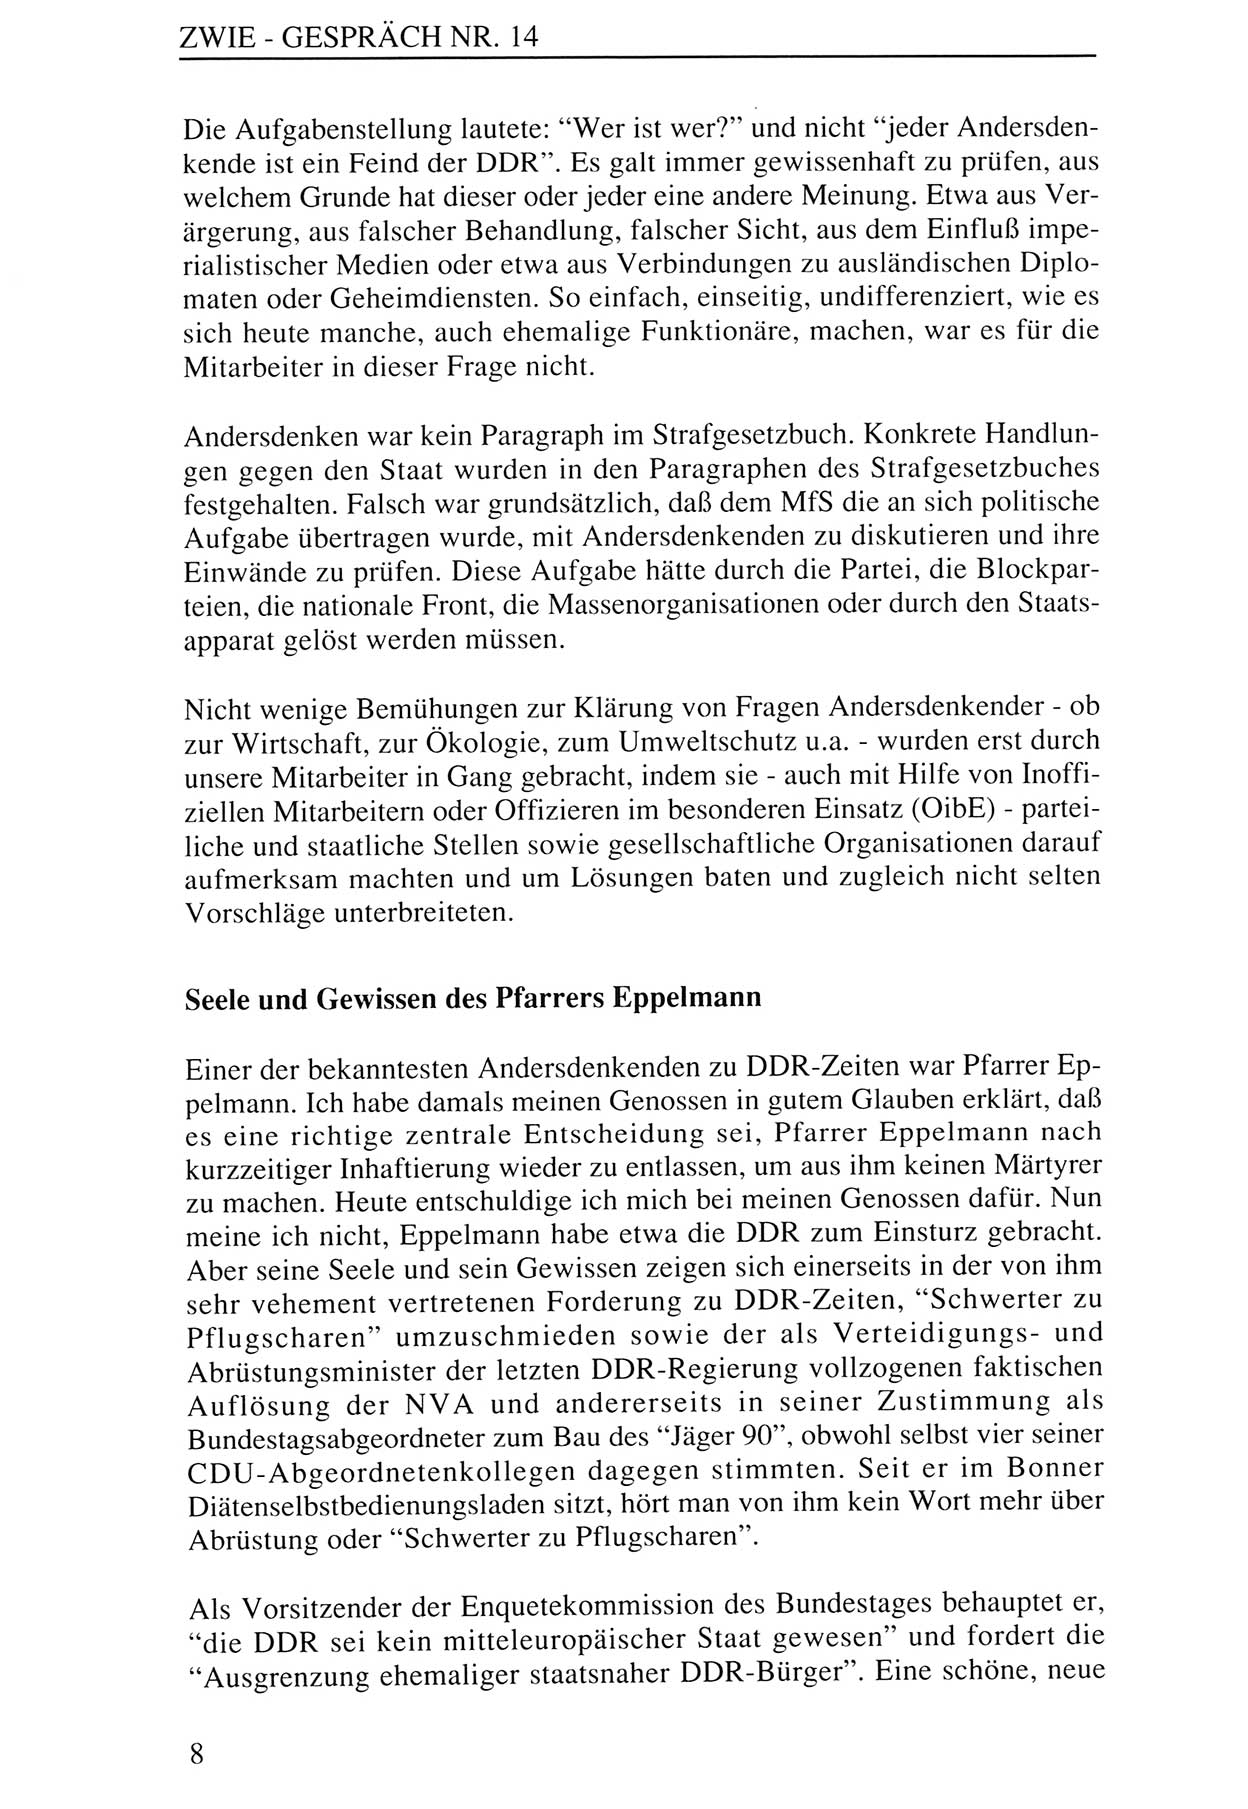 Zwie-Gespräch, Beiträge zur Aufarbeitung der Staatssicherheits-Vergangenheit [Deutsche Demokratische Republik (DDR)], Ausgabe Nr. 14, Berlin 1993, Seite 8 (Zwie-Gespr. Ausg. 14 1993, S. 8)